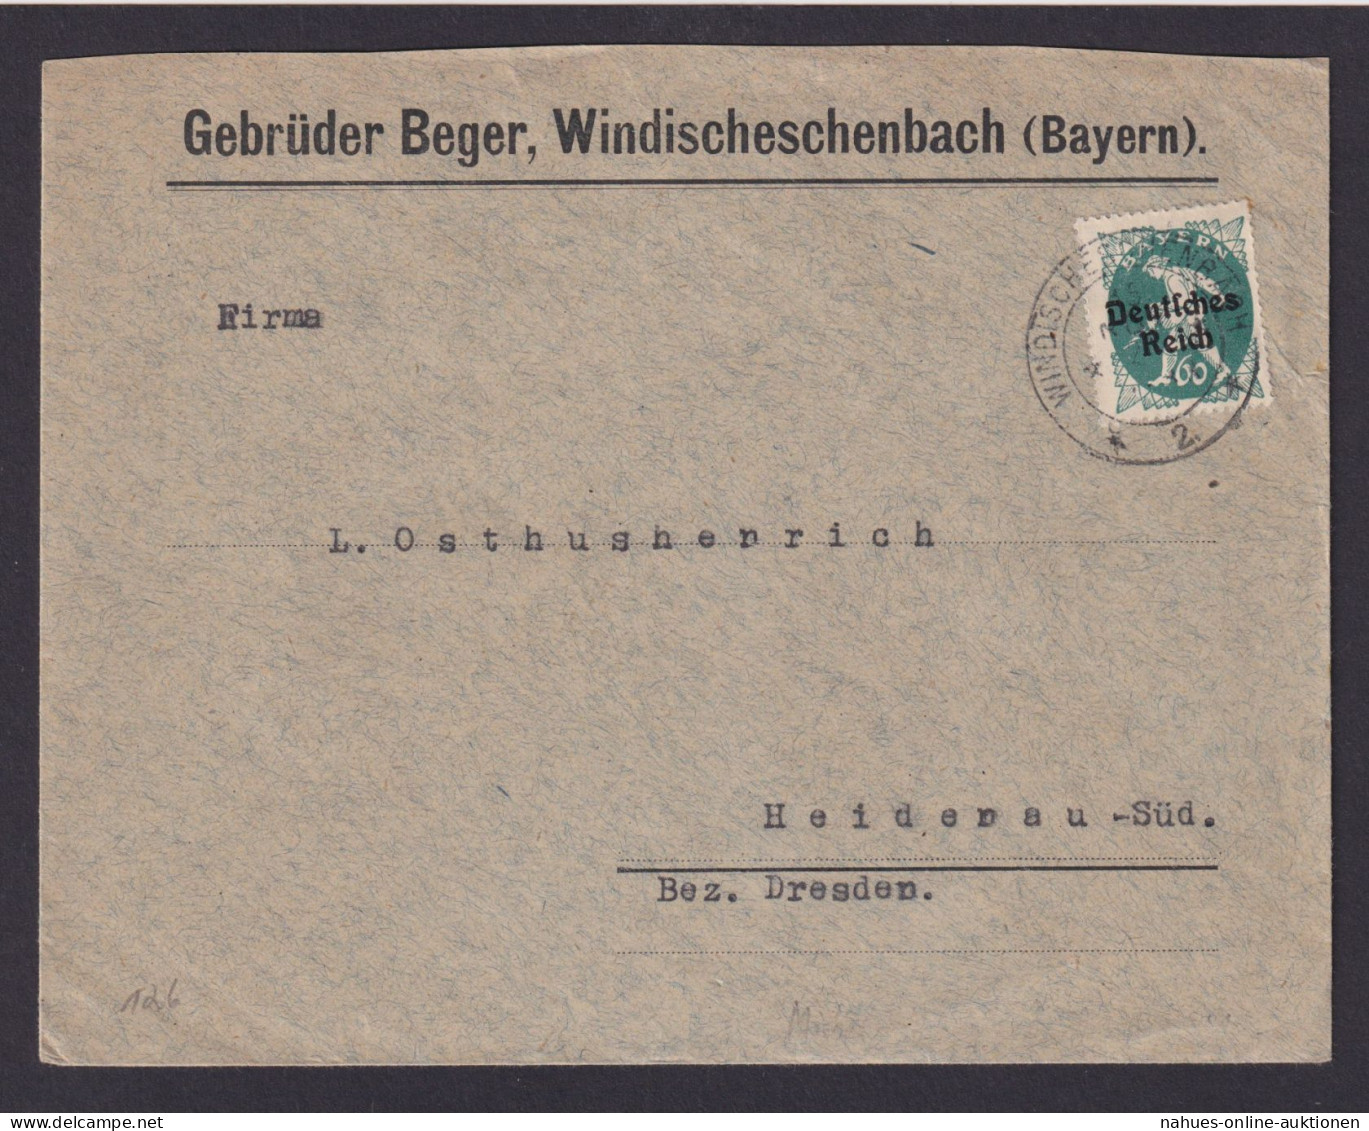 Deutsches Reich Windischeschenbach Bayern Geb. Berger Brief EF Bayern Abschied - Cartas & Documentos